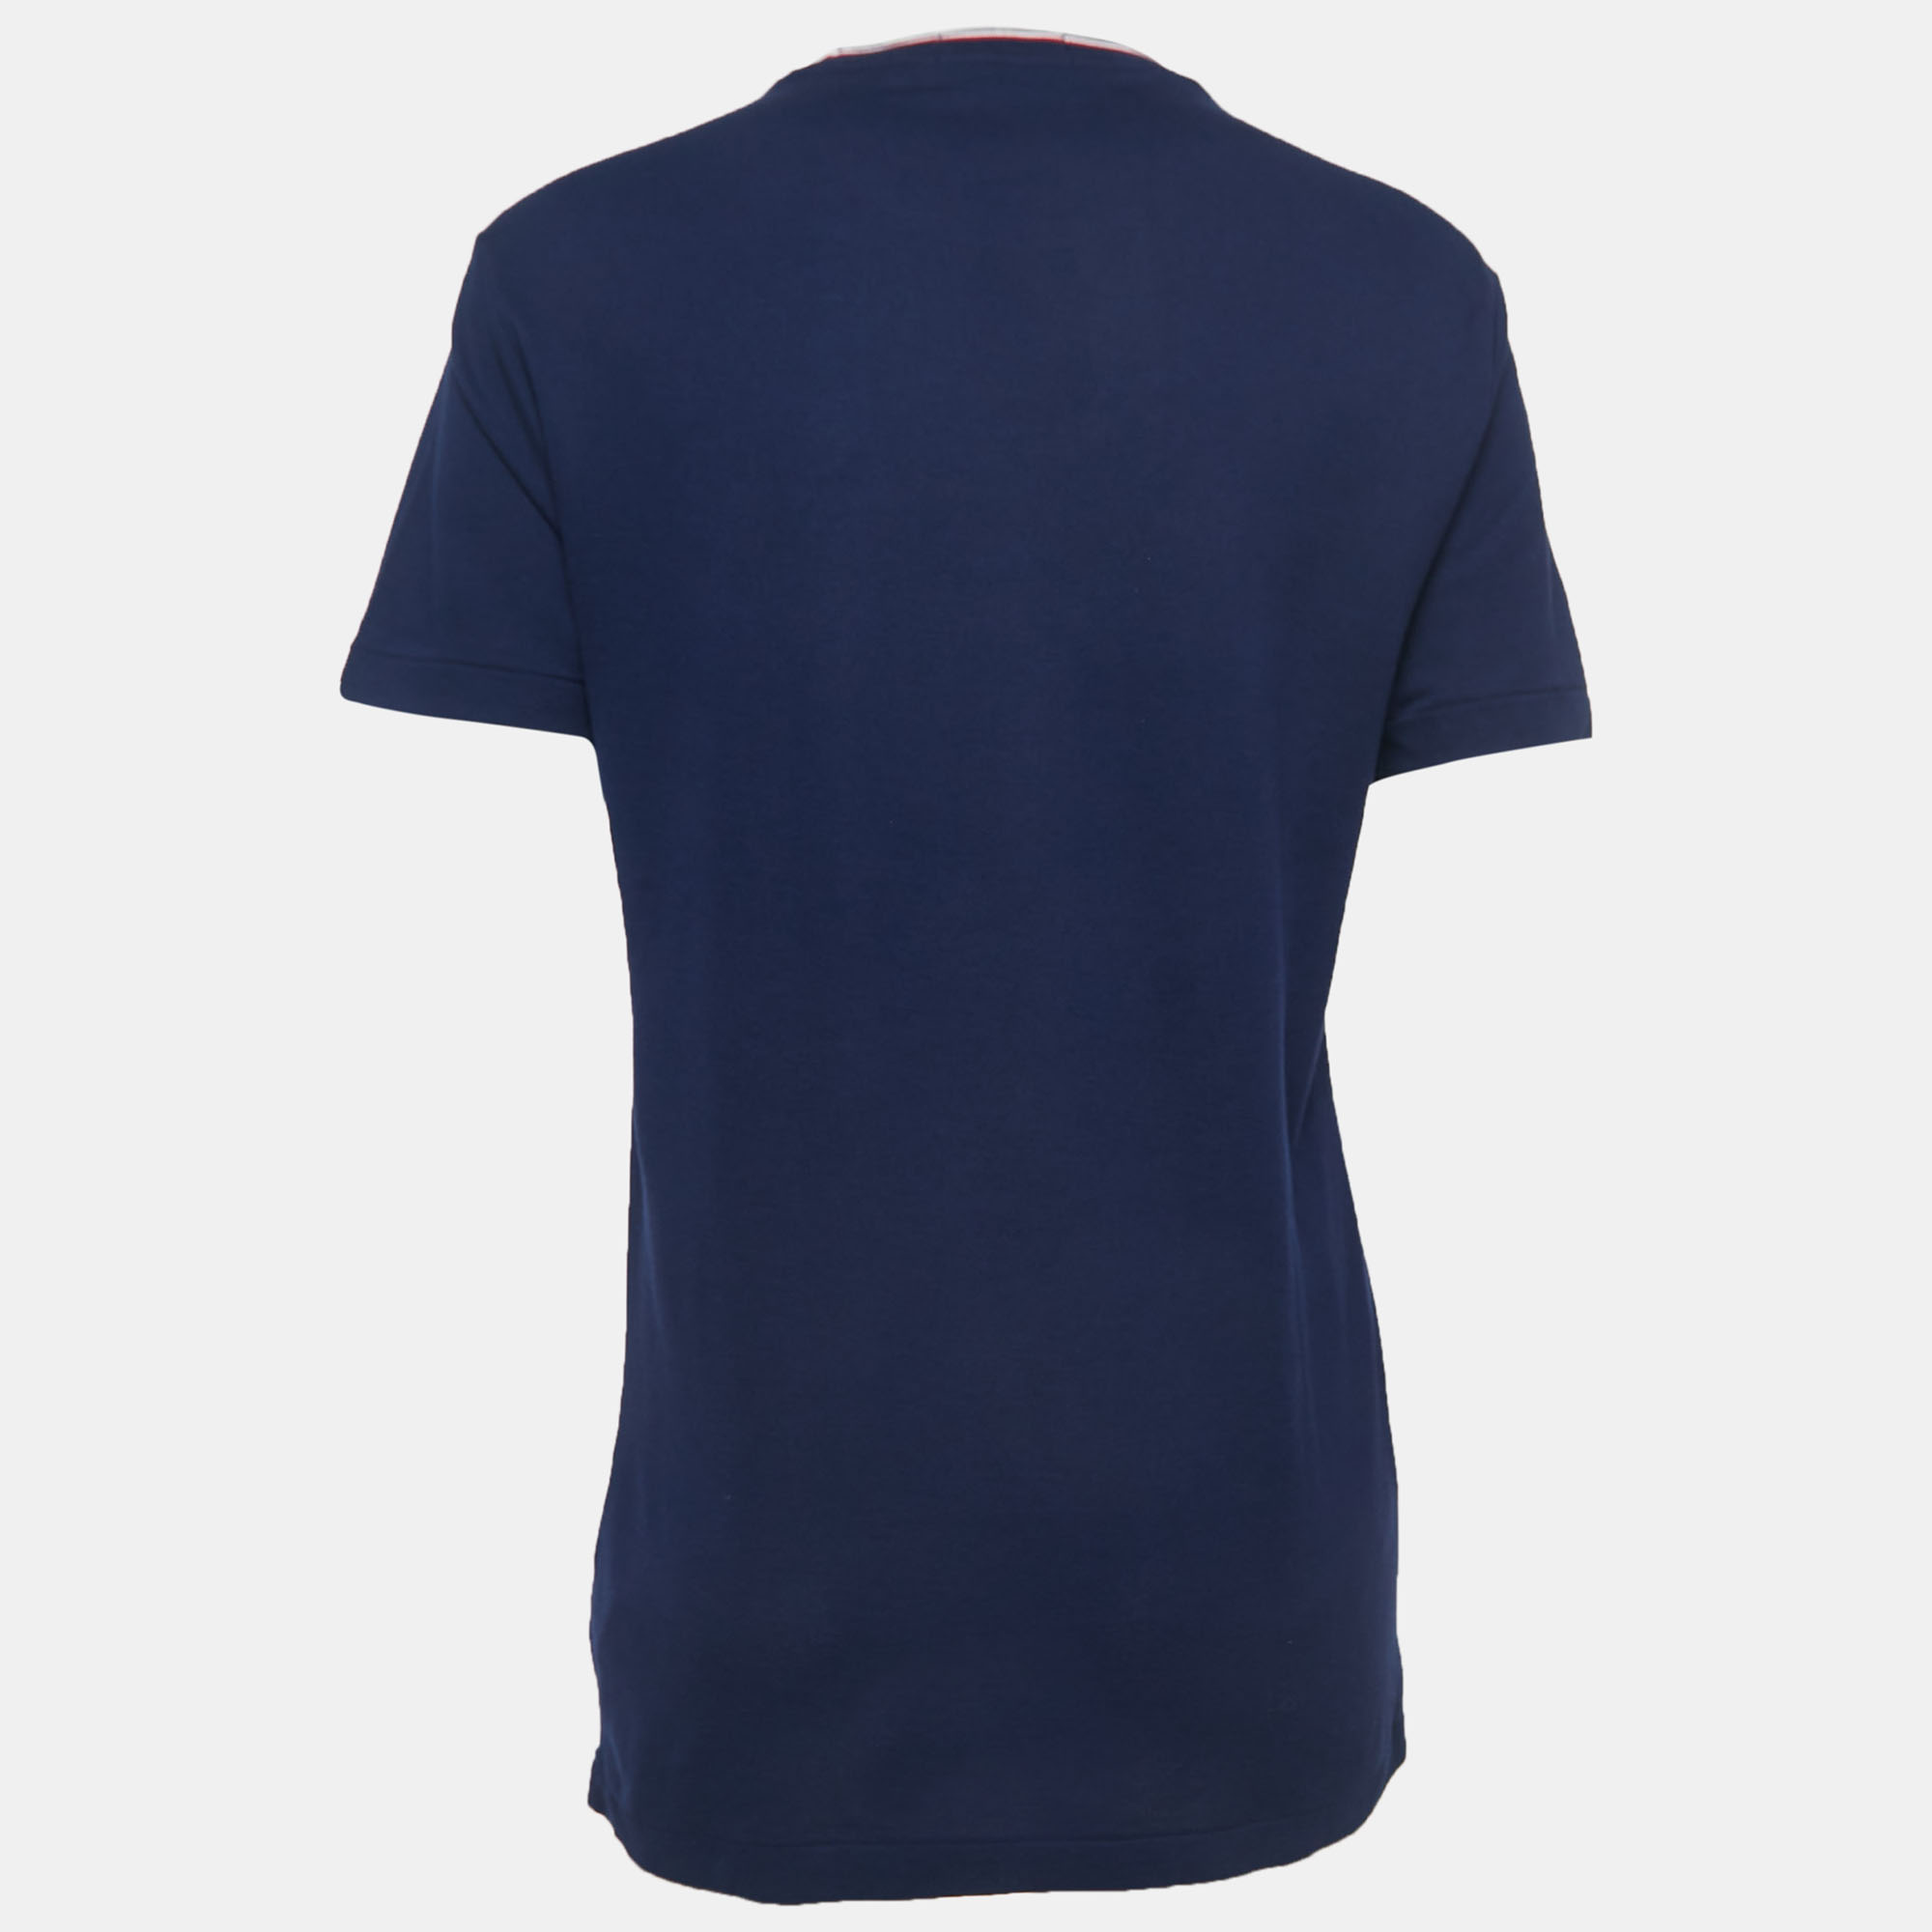 

Polo Ralph Lauren Navy Blue Cotton Pique Short Sleeve T-Shirt